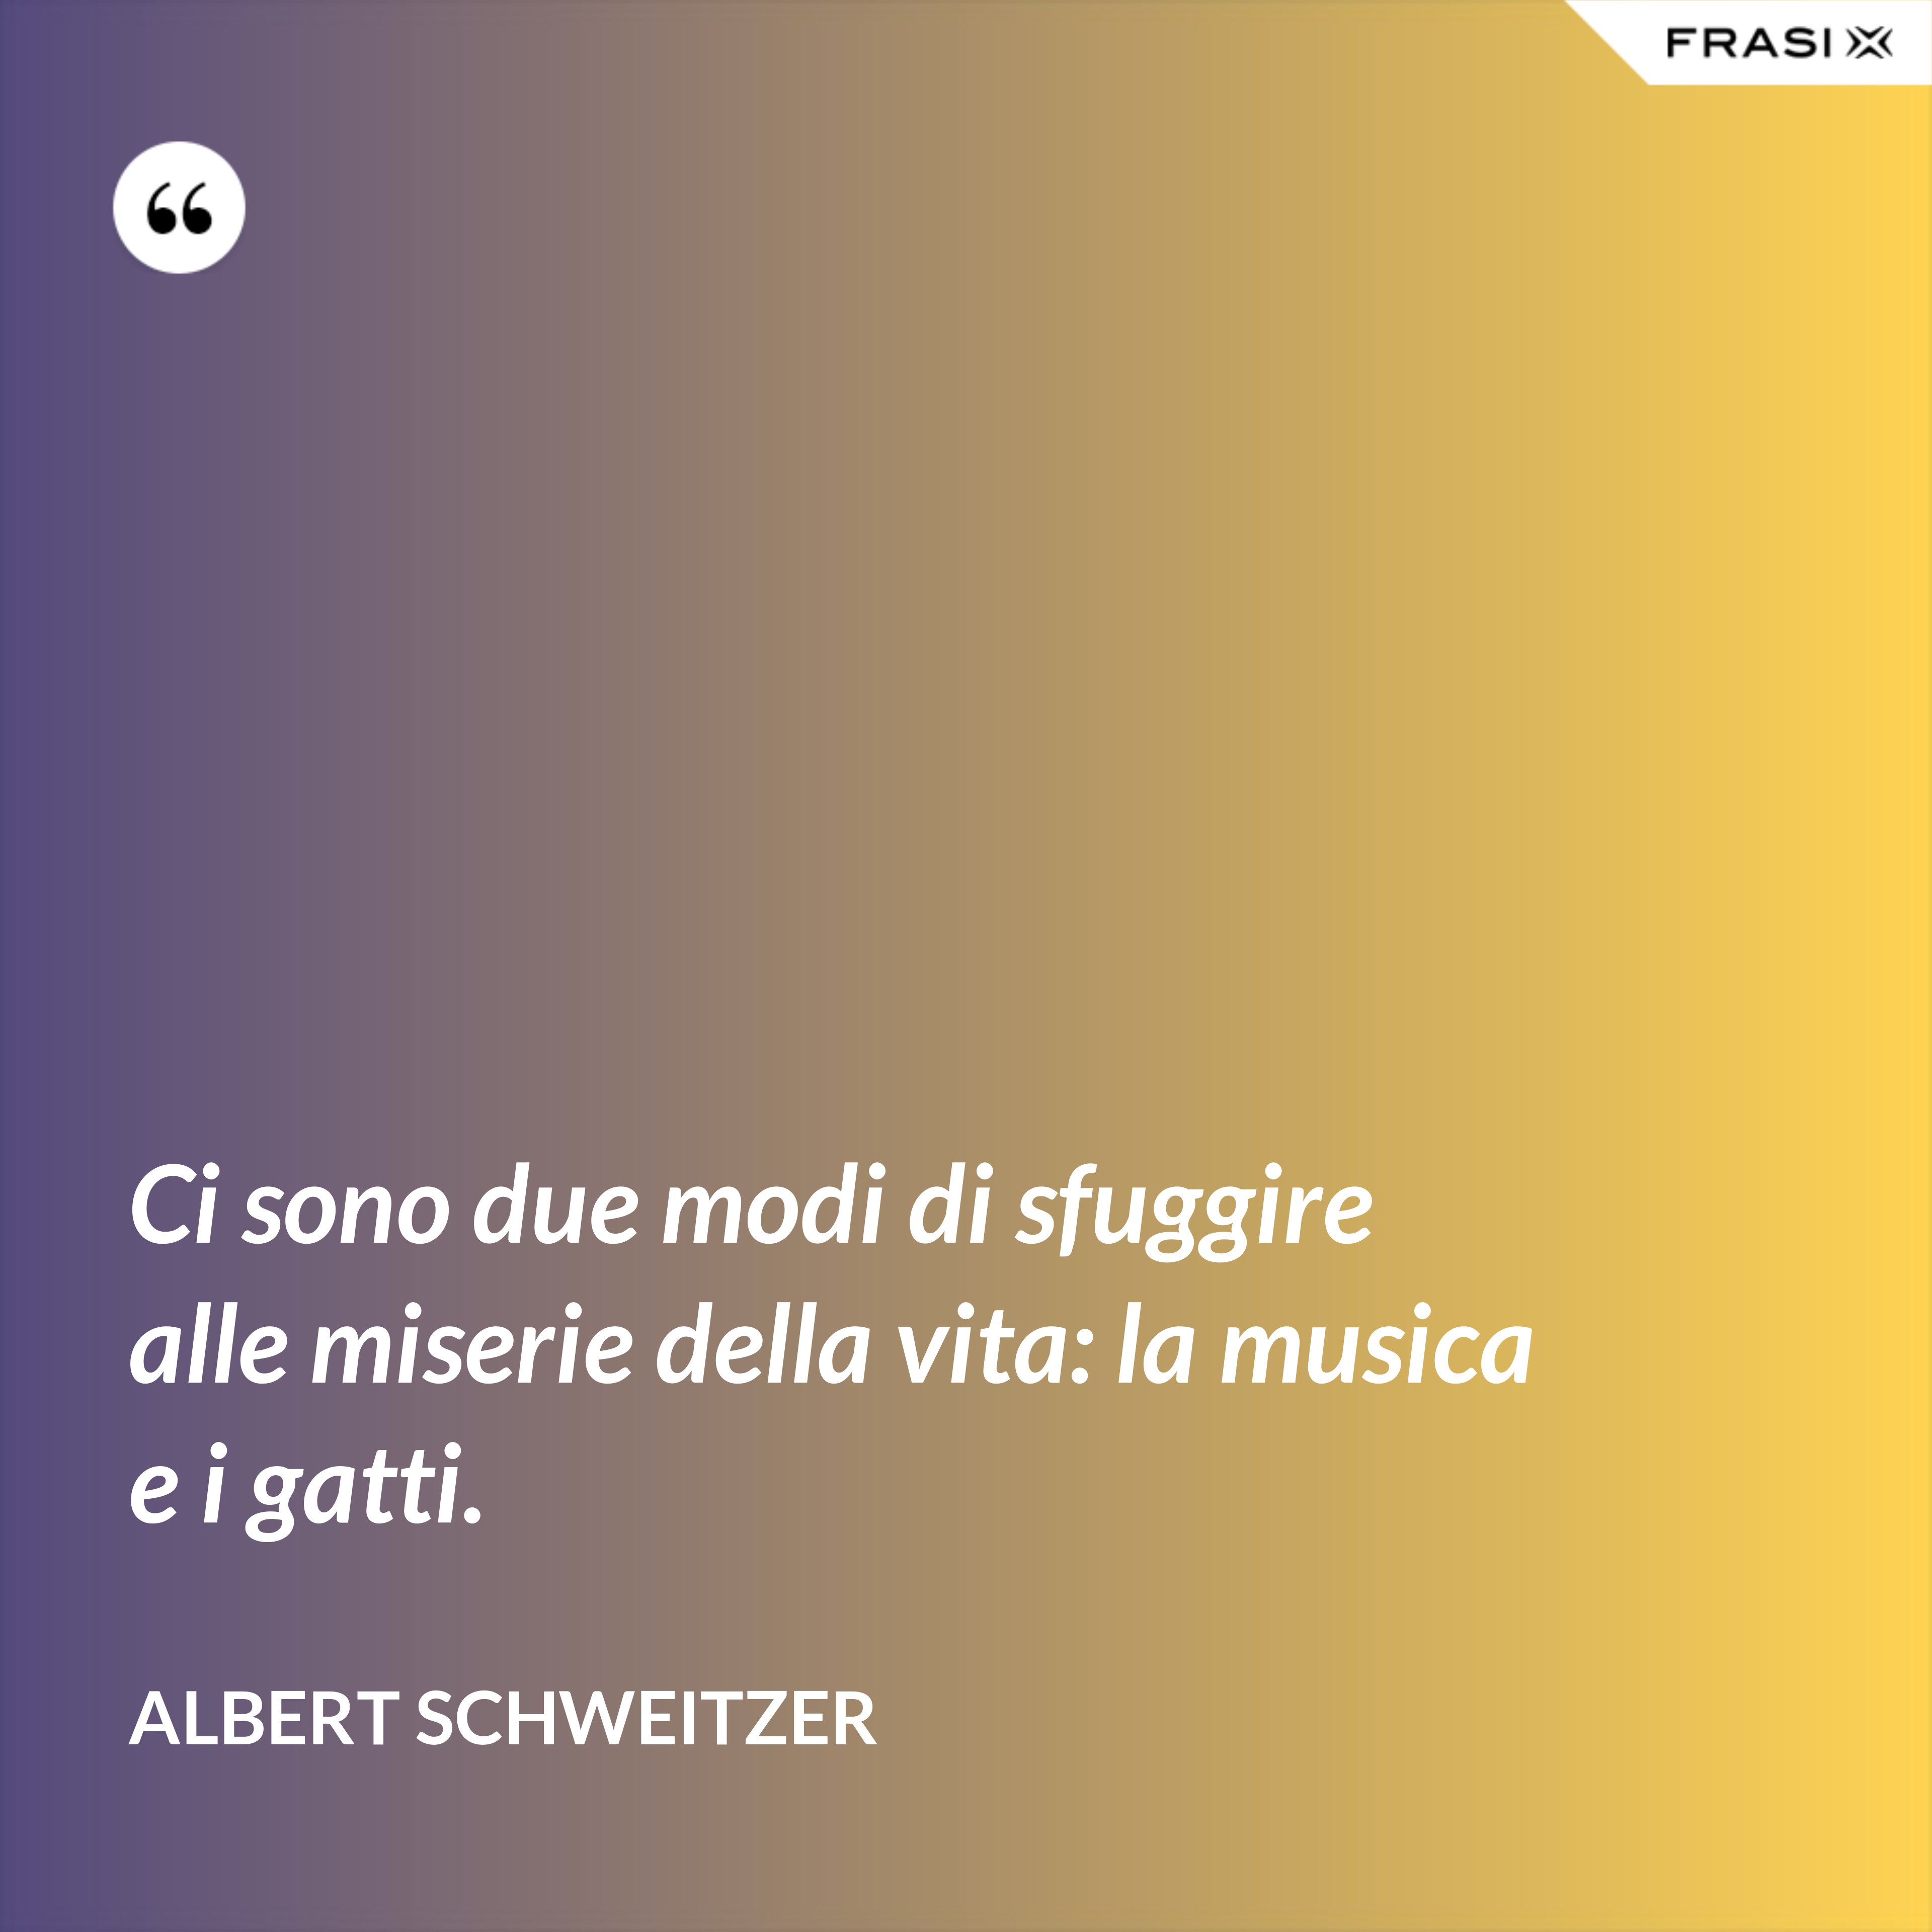 Ci sono due modi di sfuggire alle miserie della vita: la musica e i gatti. - Albert Schweitzer